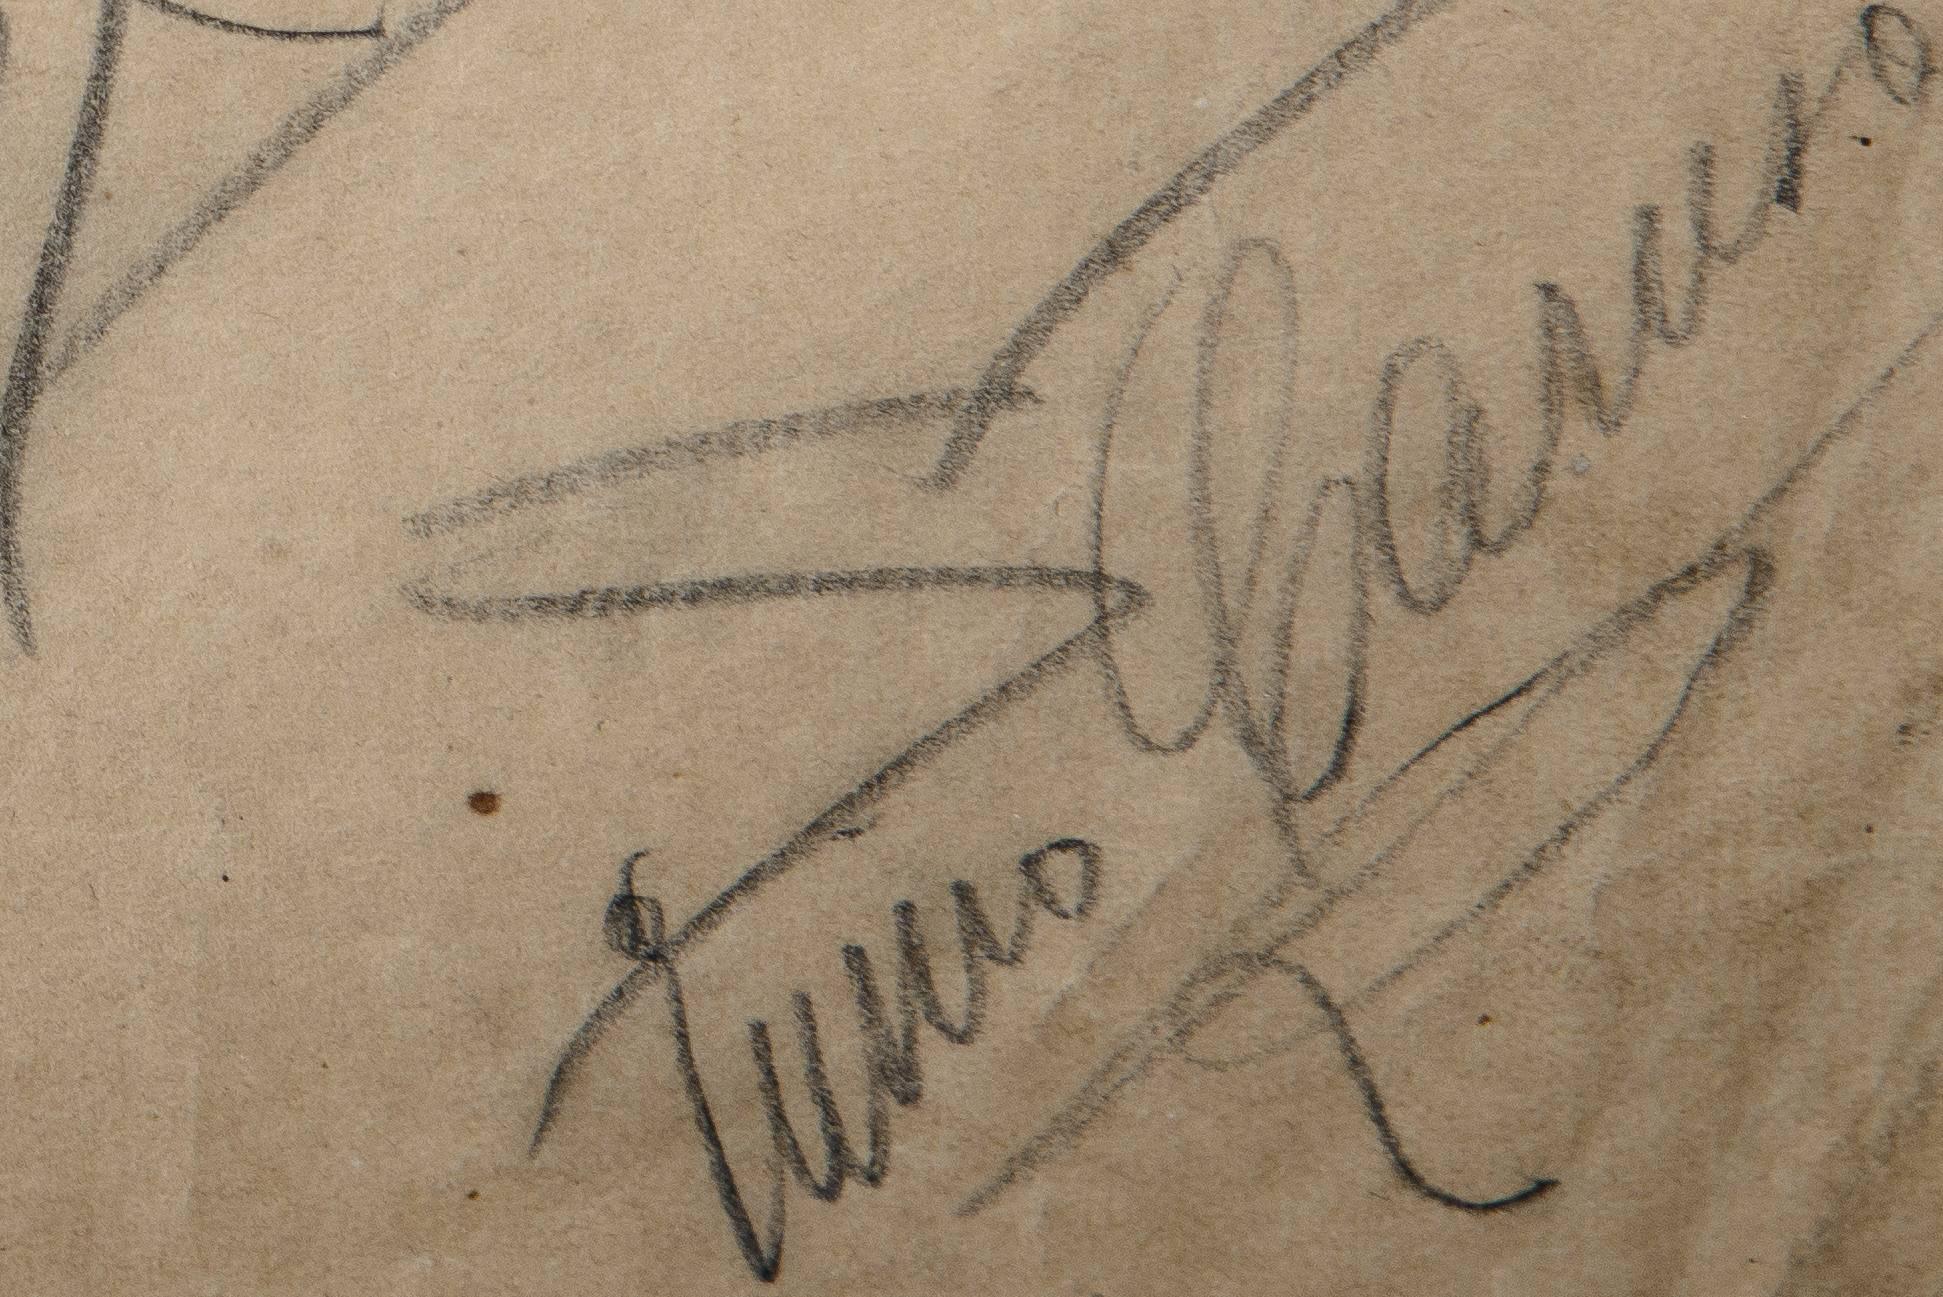 Italian Signed Pencil Sketch of Enrico Caruso and Arturo Buzzi-Peccia by Enrico Caruso For Sale